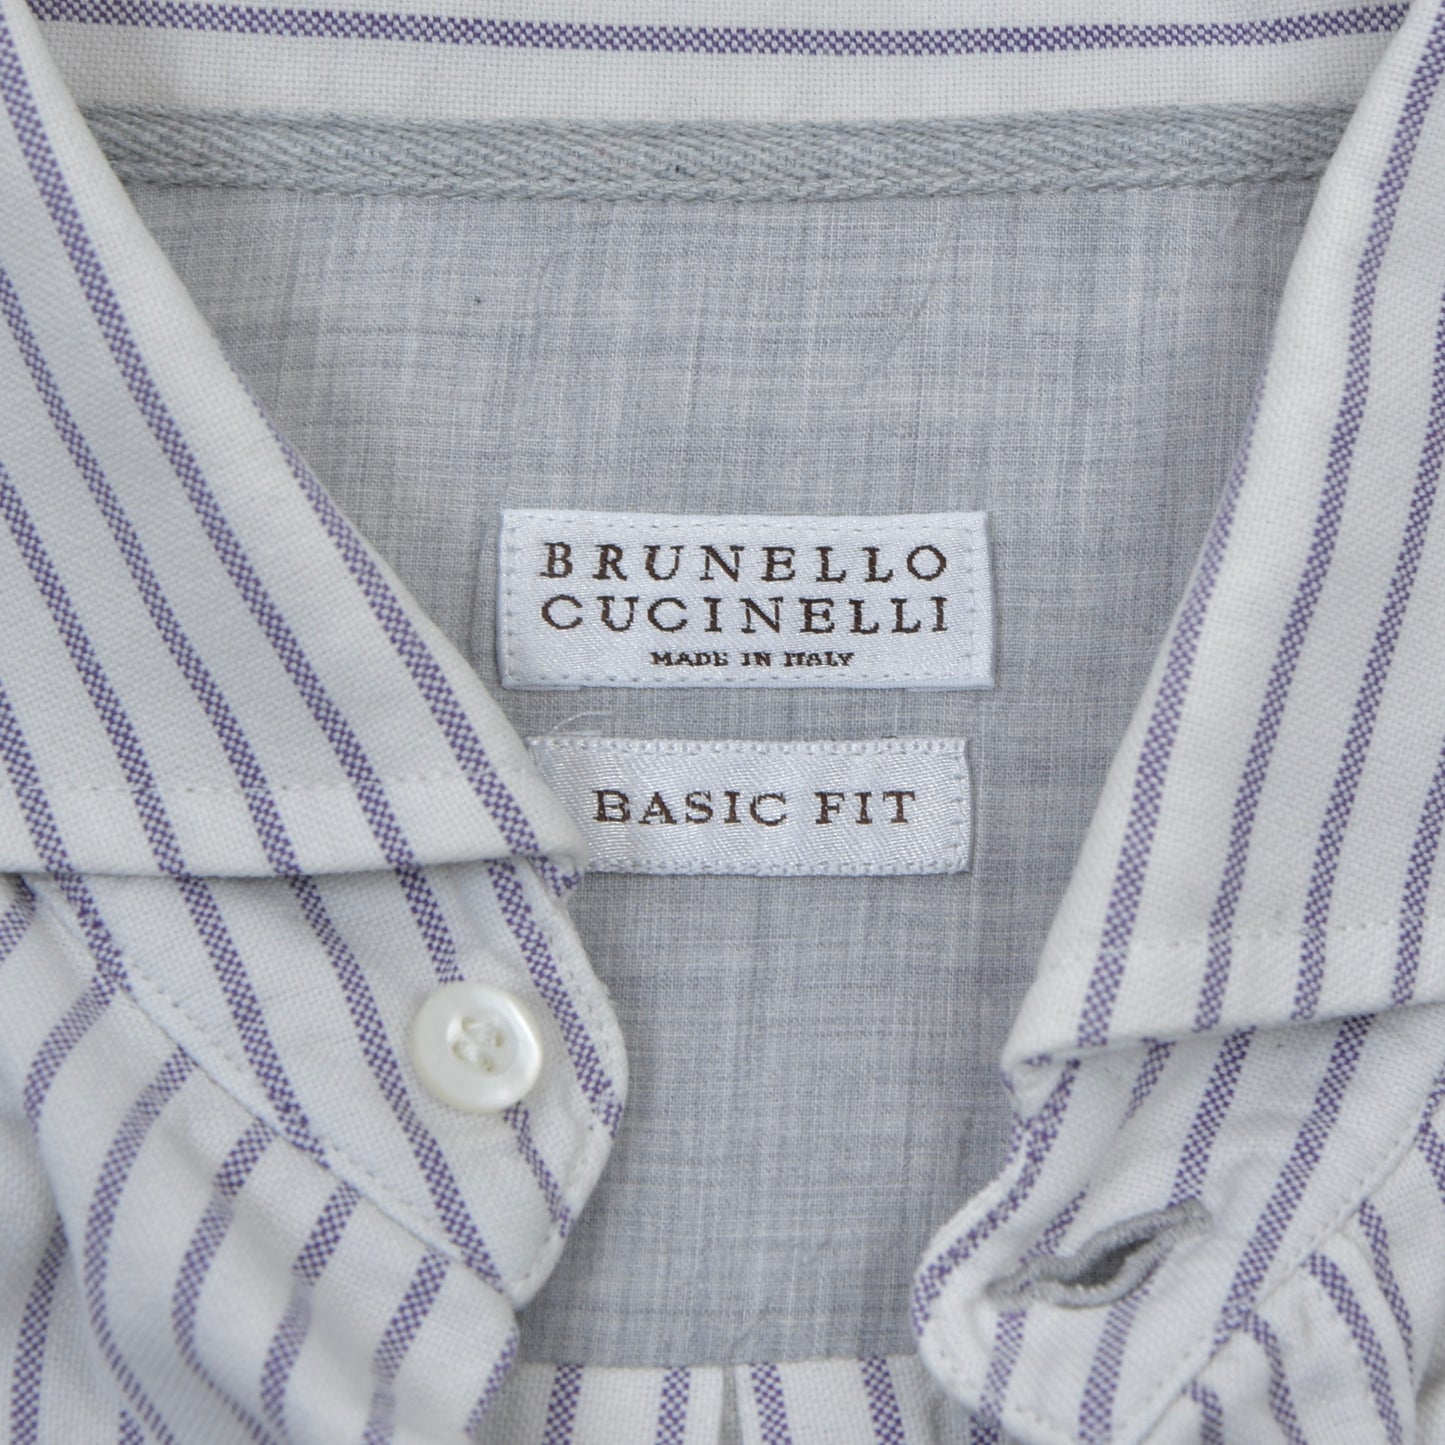 Brunello Cucinelli Hemd, Größe L, Basic Fit - Gestreift